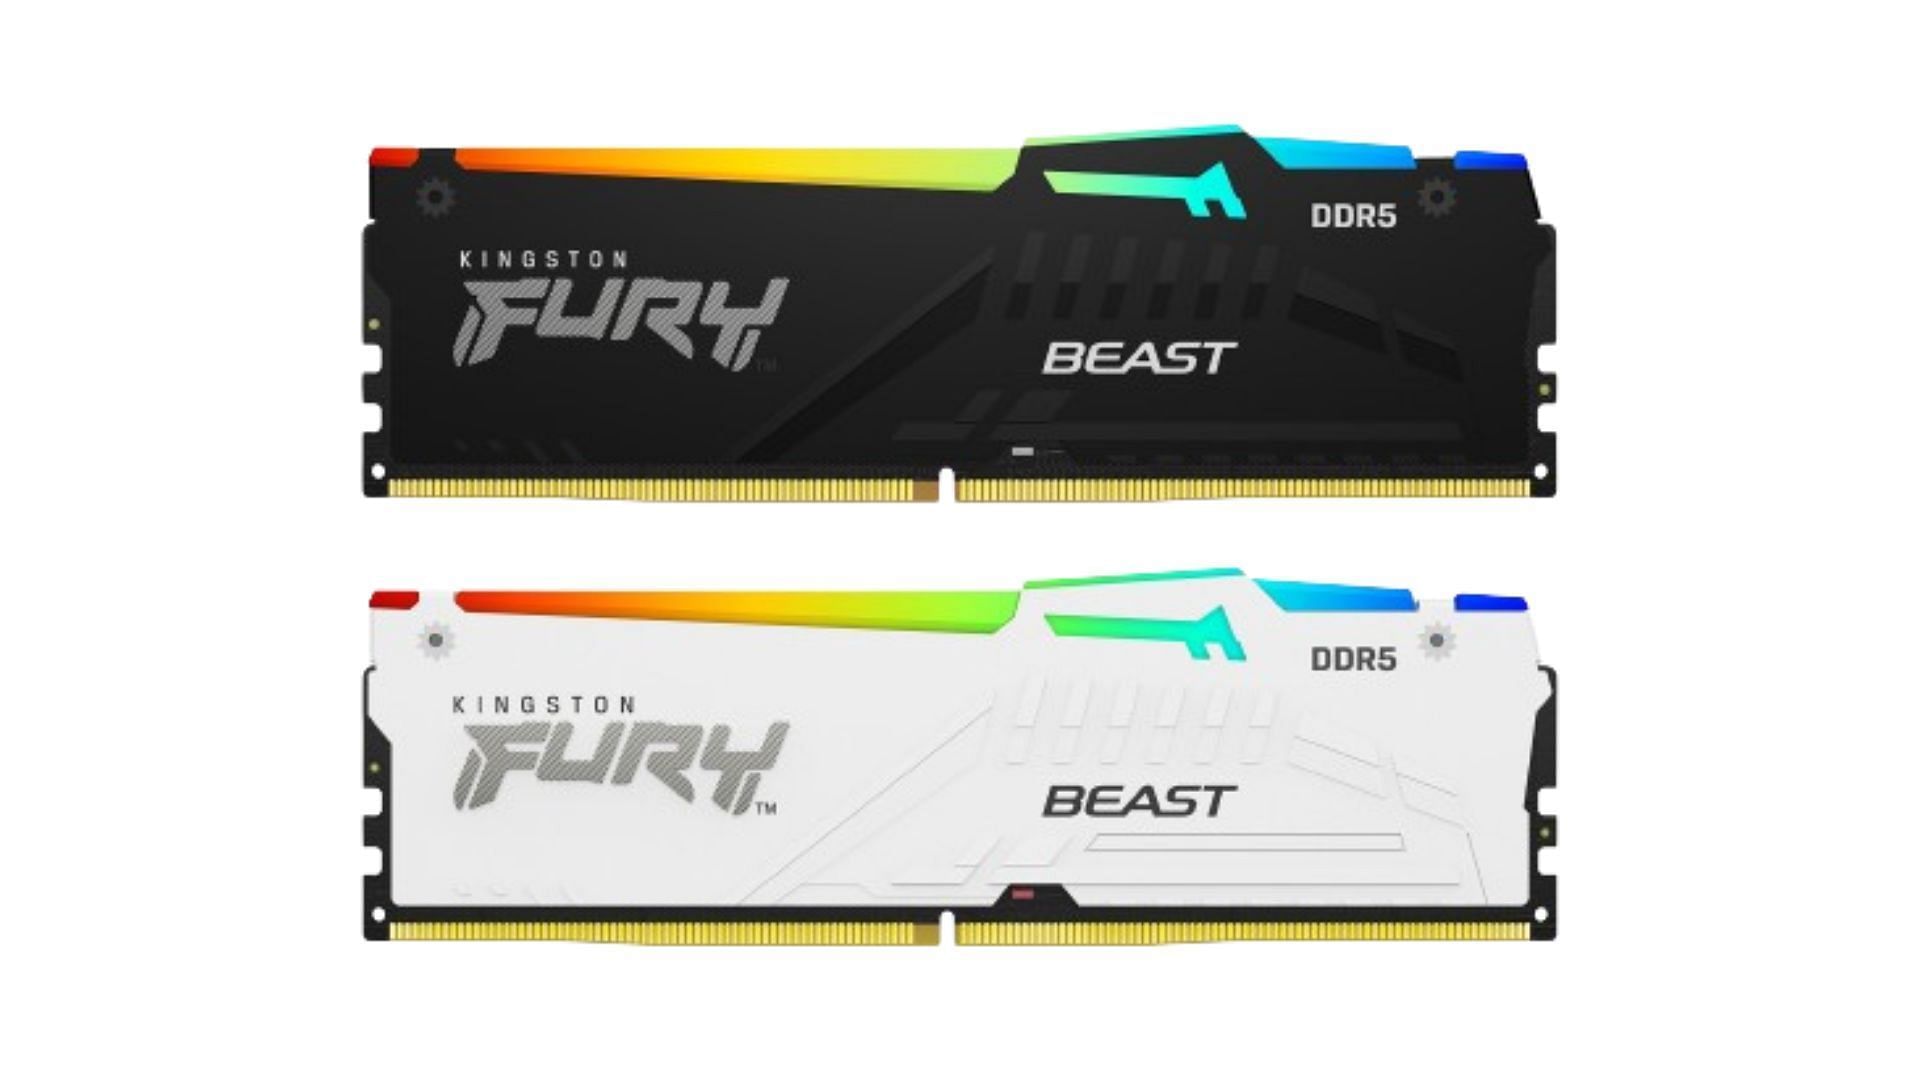 Kingston FURY Beast RGB DDR5-5200 - best RGB DDR5 RAM for gaming (Image via Kingston)